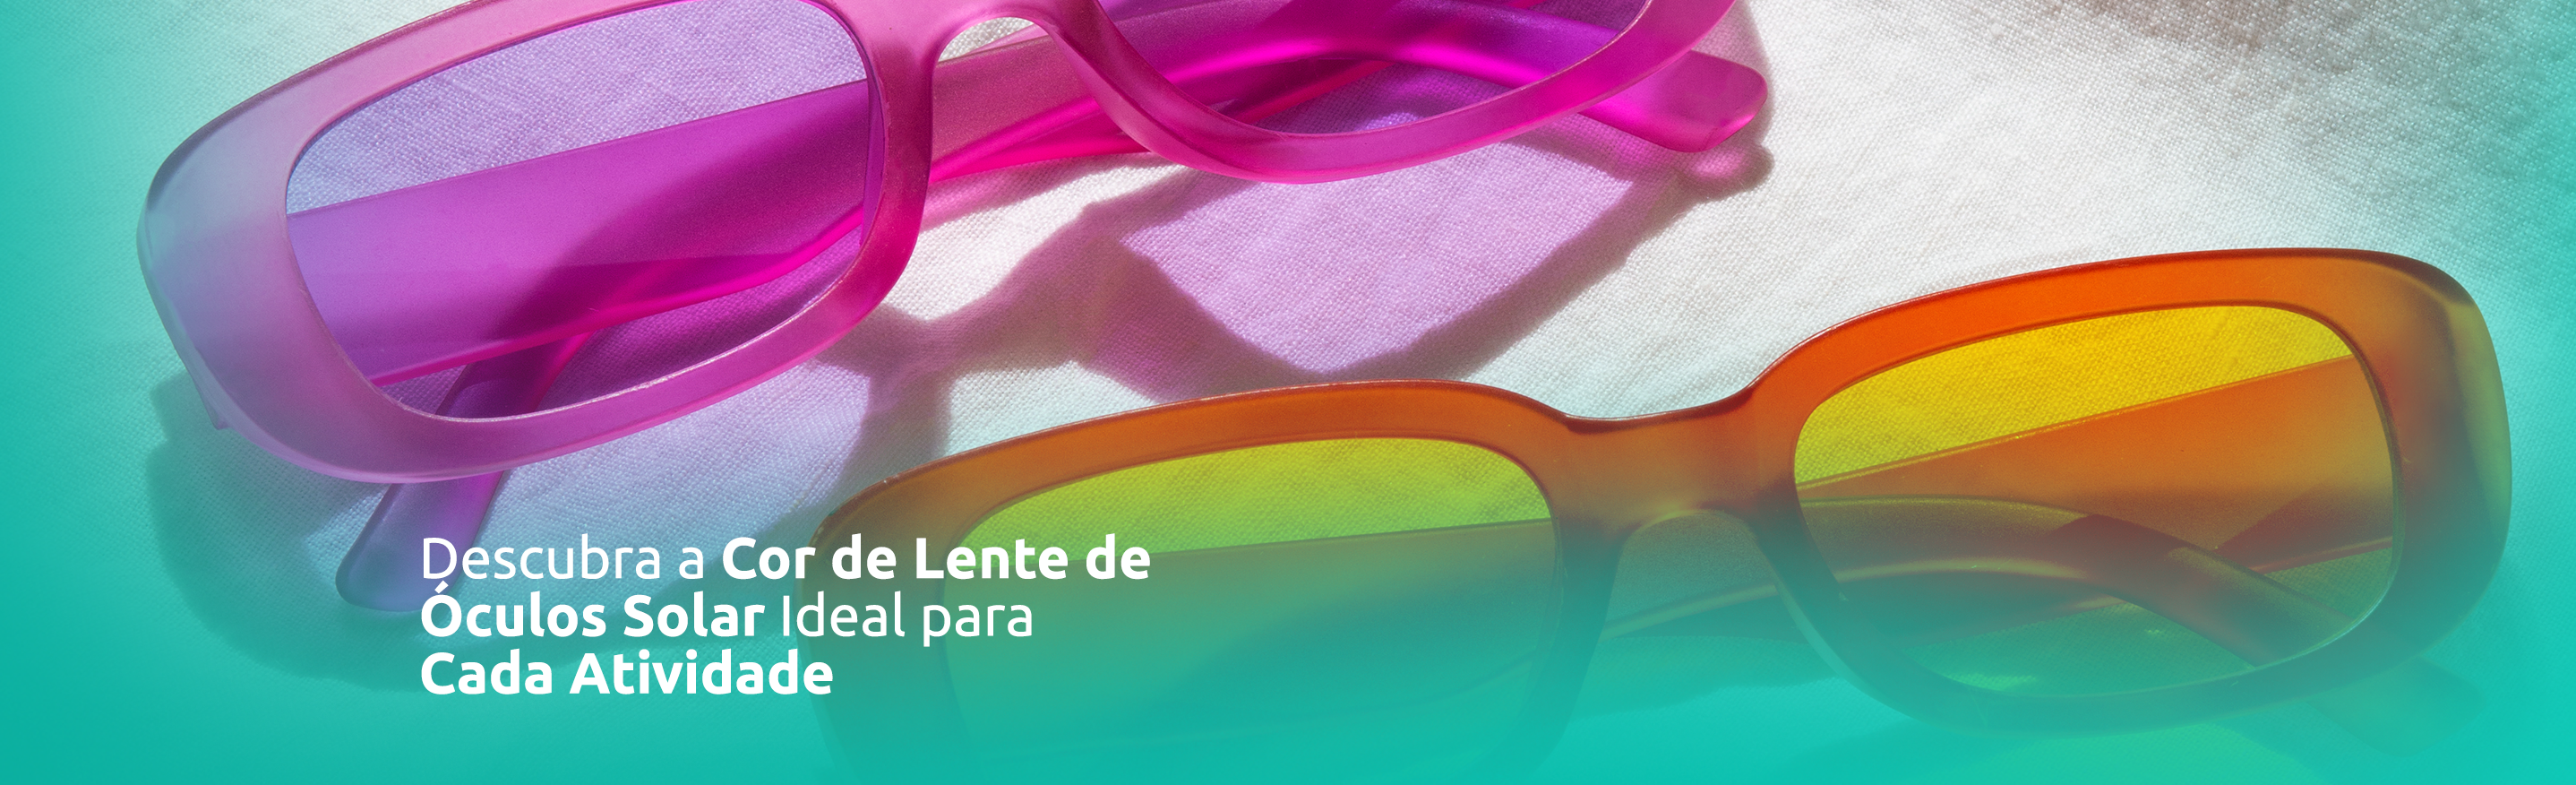 Você sabia que a cor da lente dos óculos solares pode influenciar diretamente na sua experiência visual e proteção dos olhos?